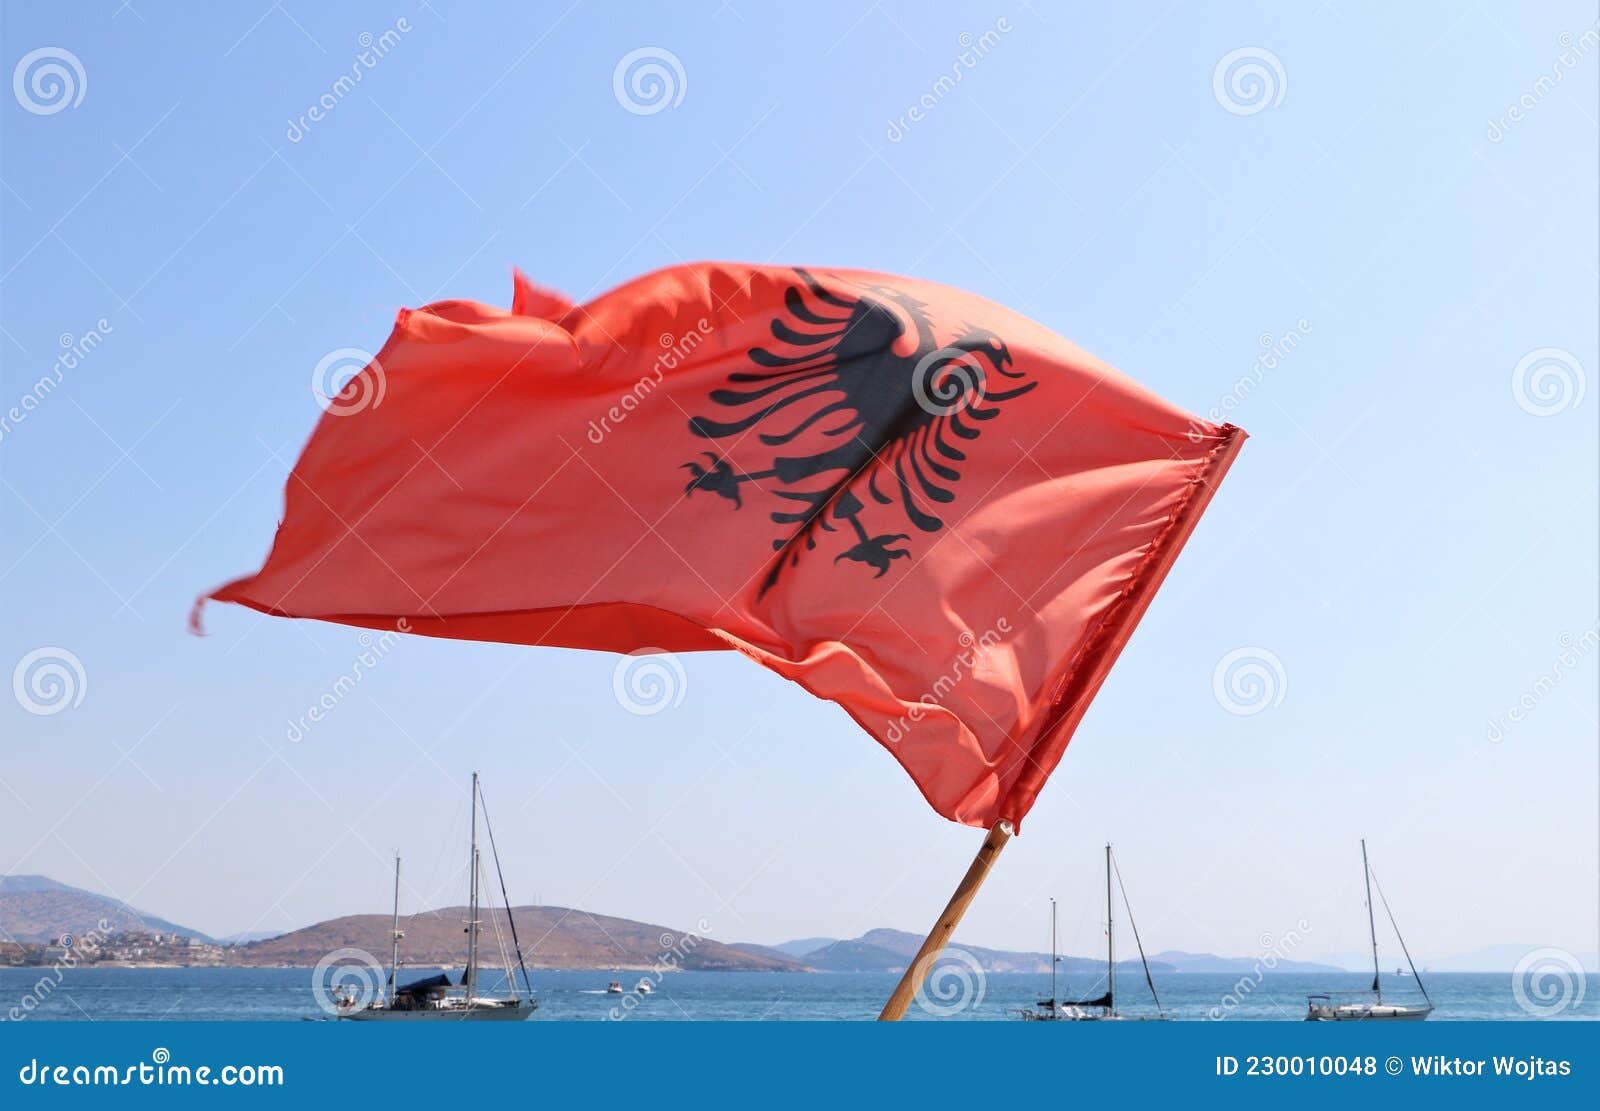 Bandera de albania foto de archivo. Imagen de albania - 230010048